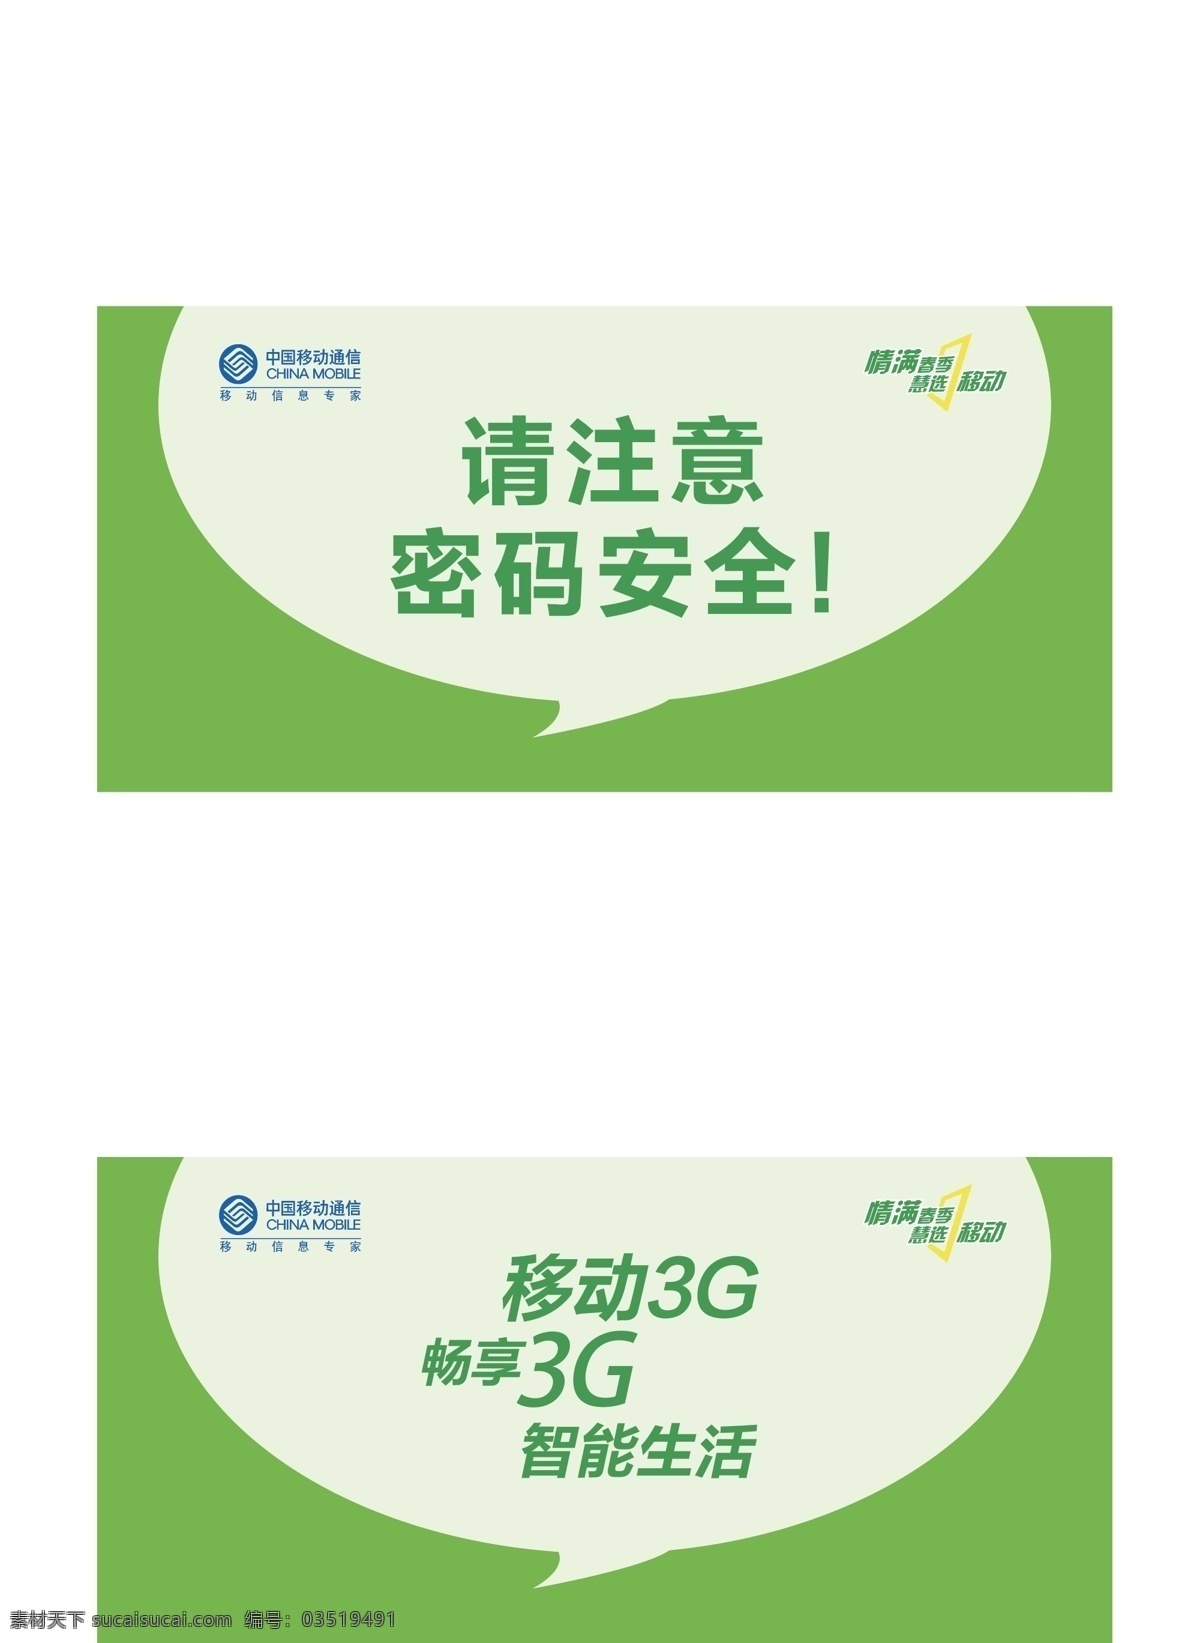 温馨提示 小标签 小标贴 中国移动 温馨 提示 室内 柜员机 标贴 自助 缴费 机 海报 物料 矢量 其他海报设计